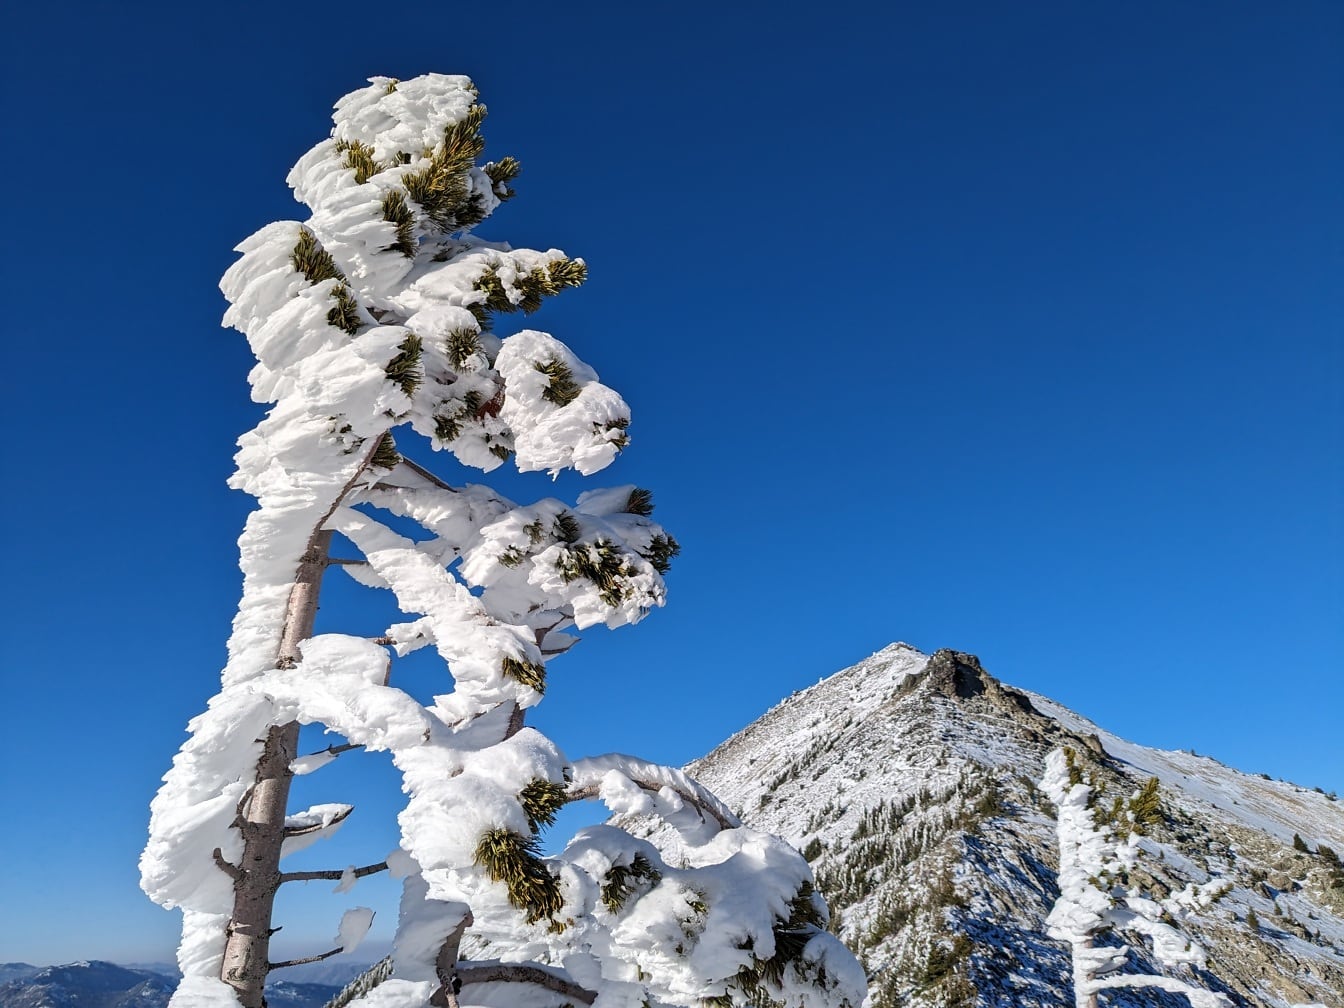 针叶树枝与冰冻的雪，深蓝色的天空为背景